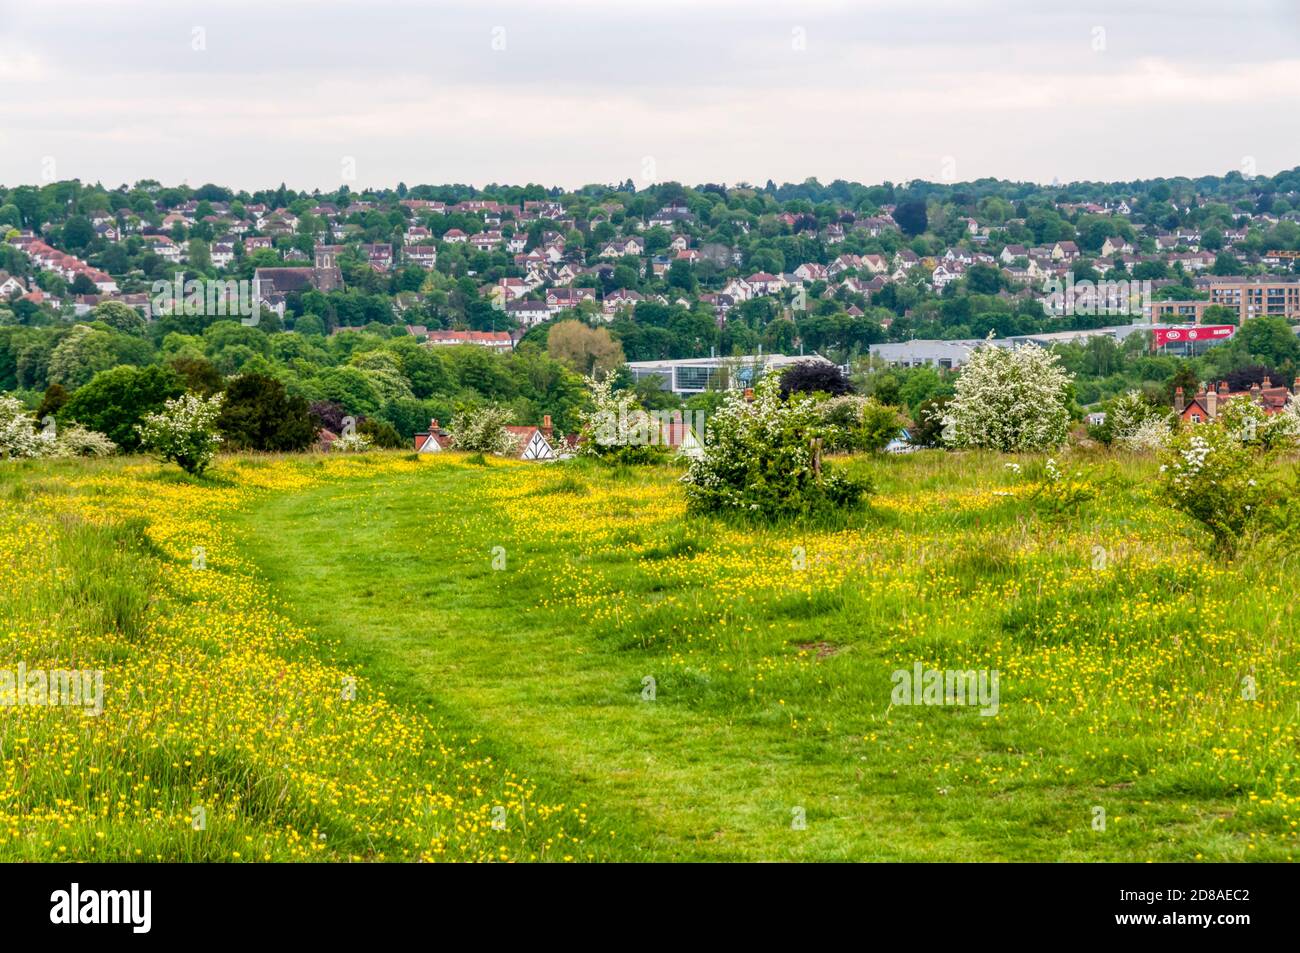 Farthing Downs, ein Freigelände im Besitz der City, das Teil des Grüngürtelgrundstücks südlich von London ist. Stockfoto